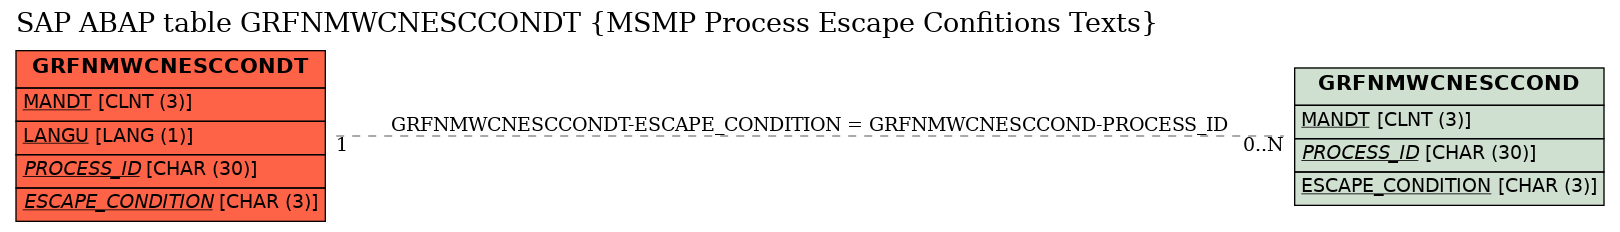 E-R Diagram for table GRFNMWCNESCCONDT (MSMP Process Escape Confitions Texts)